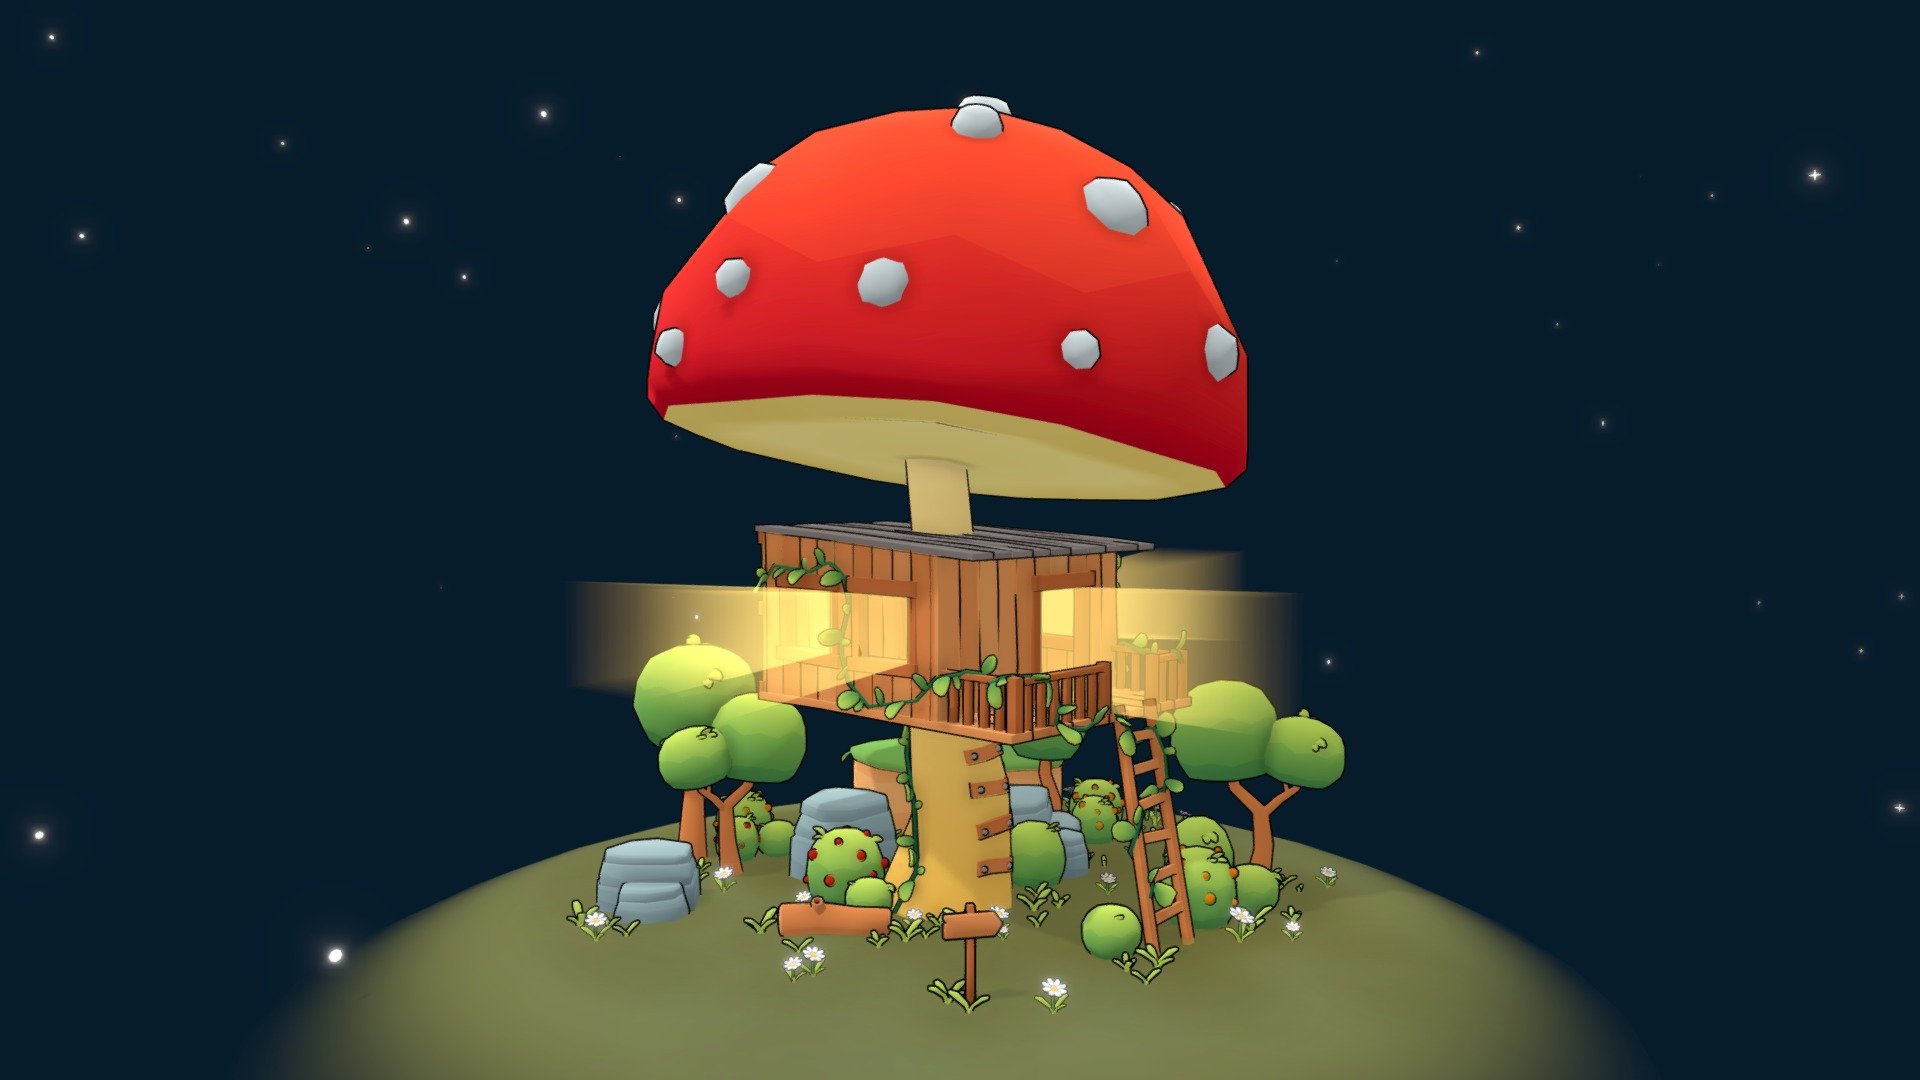 Mushroom House - 3D model by joaobaltieri 3d model